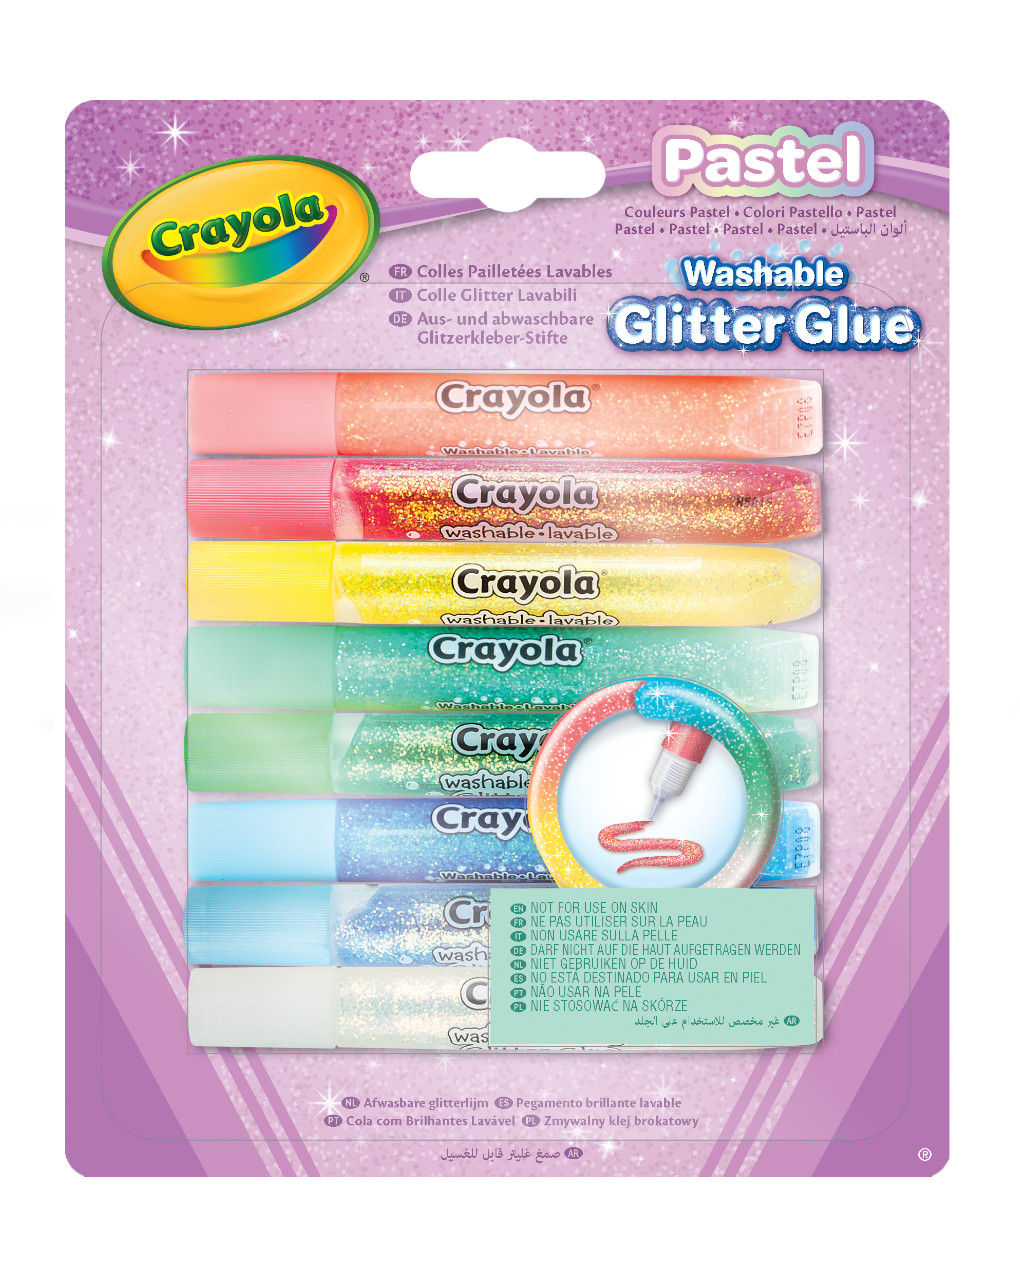 Colle glitter lavabili - confezione da 8 pezzi - crayola pastel - Crayola